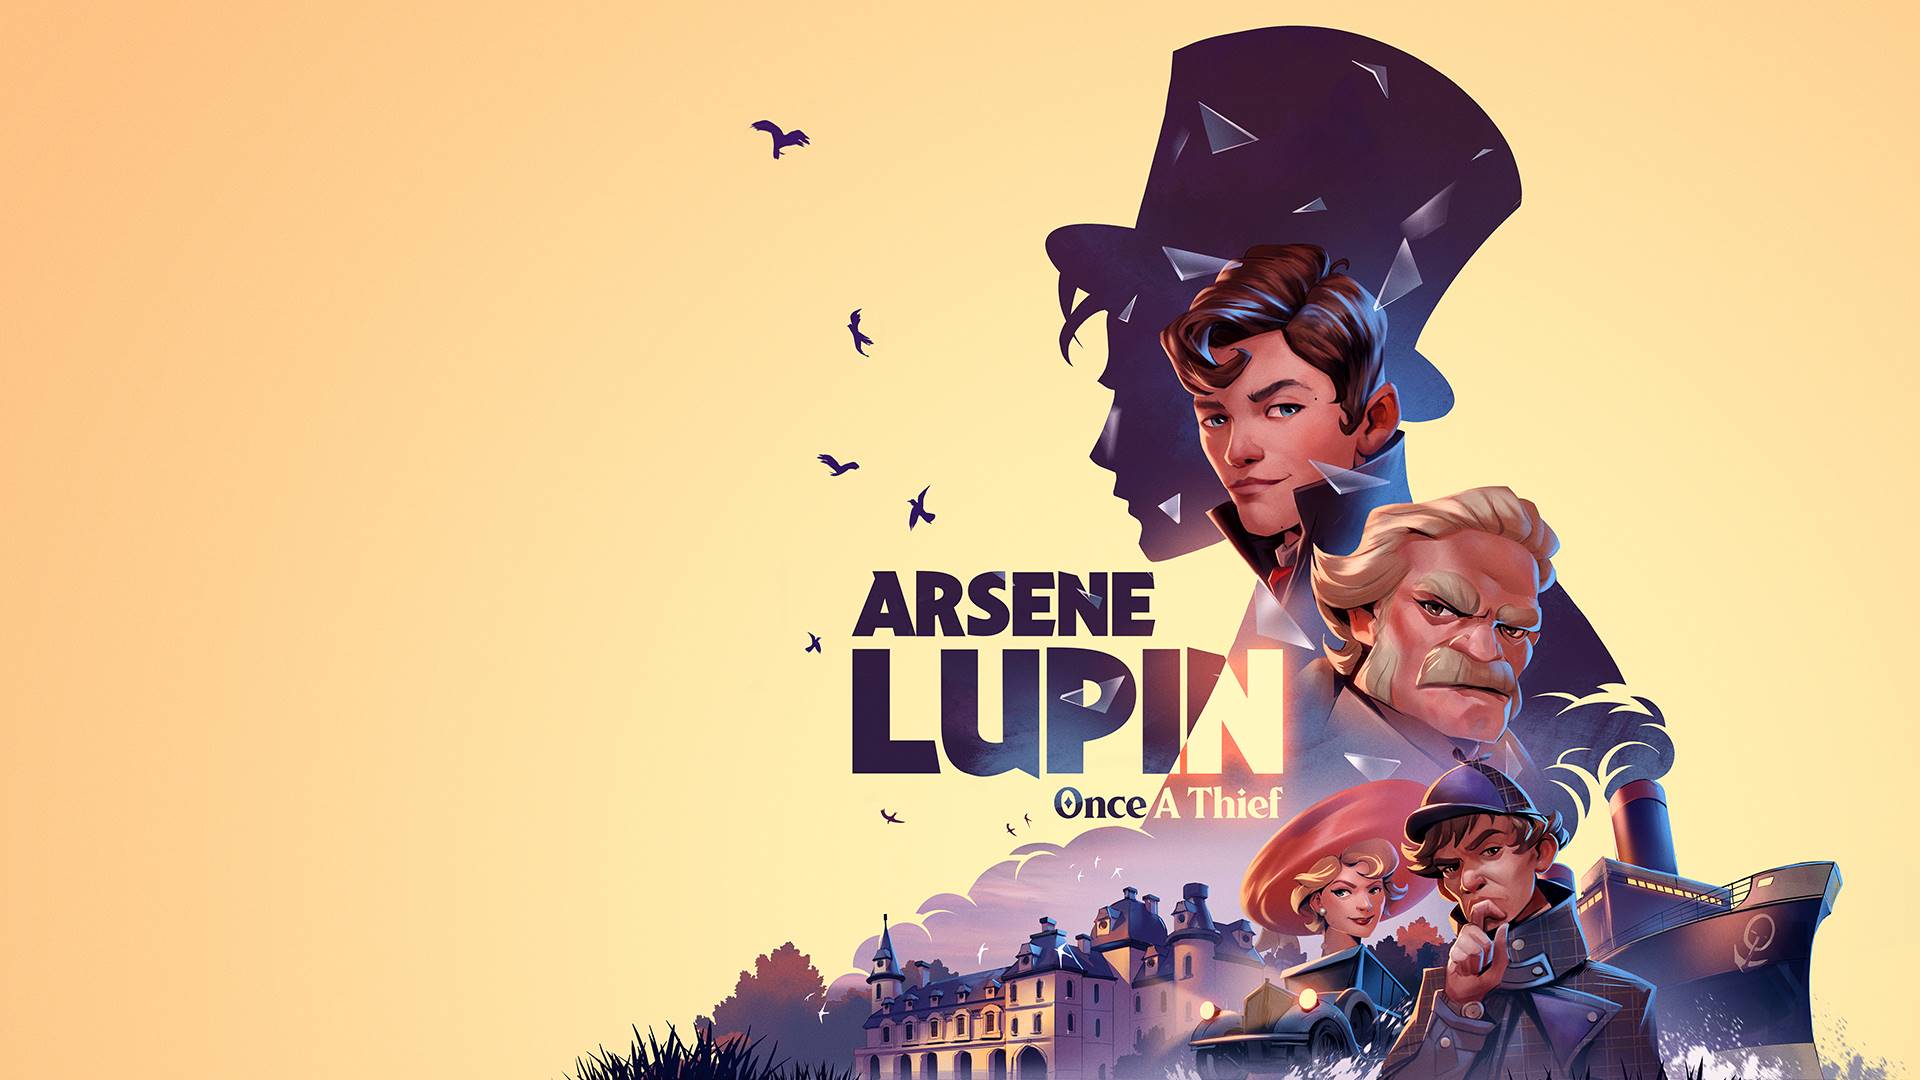 Arsene Lupin Once a Thief annunciato per console e PC